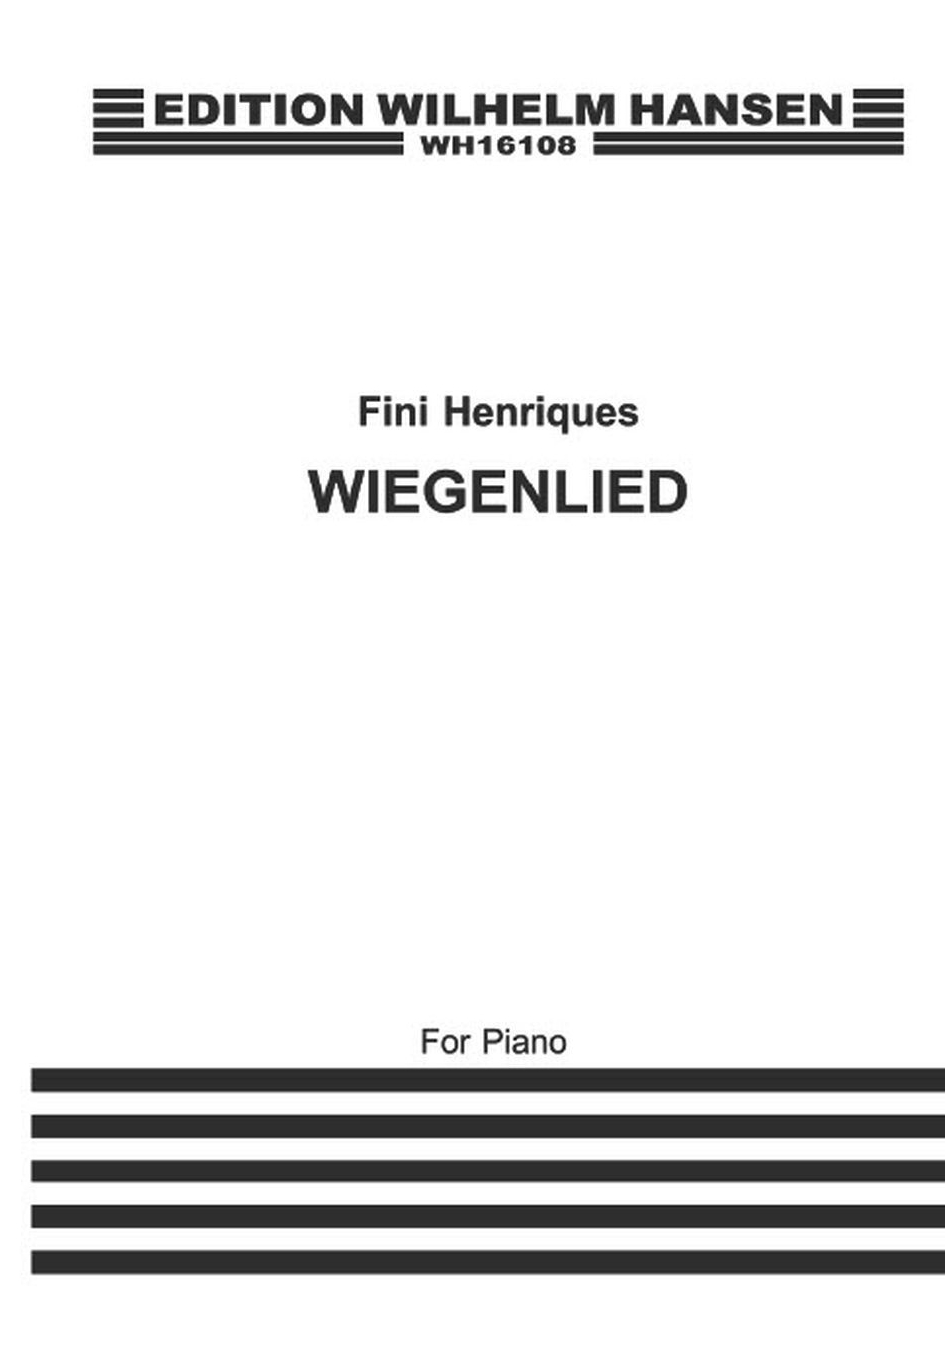 Fini Henriqus: Wiegenlied (Piano)